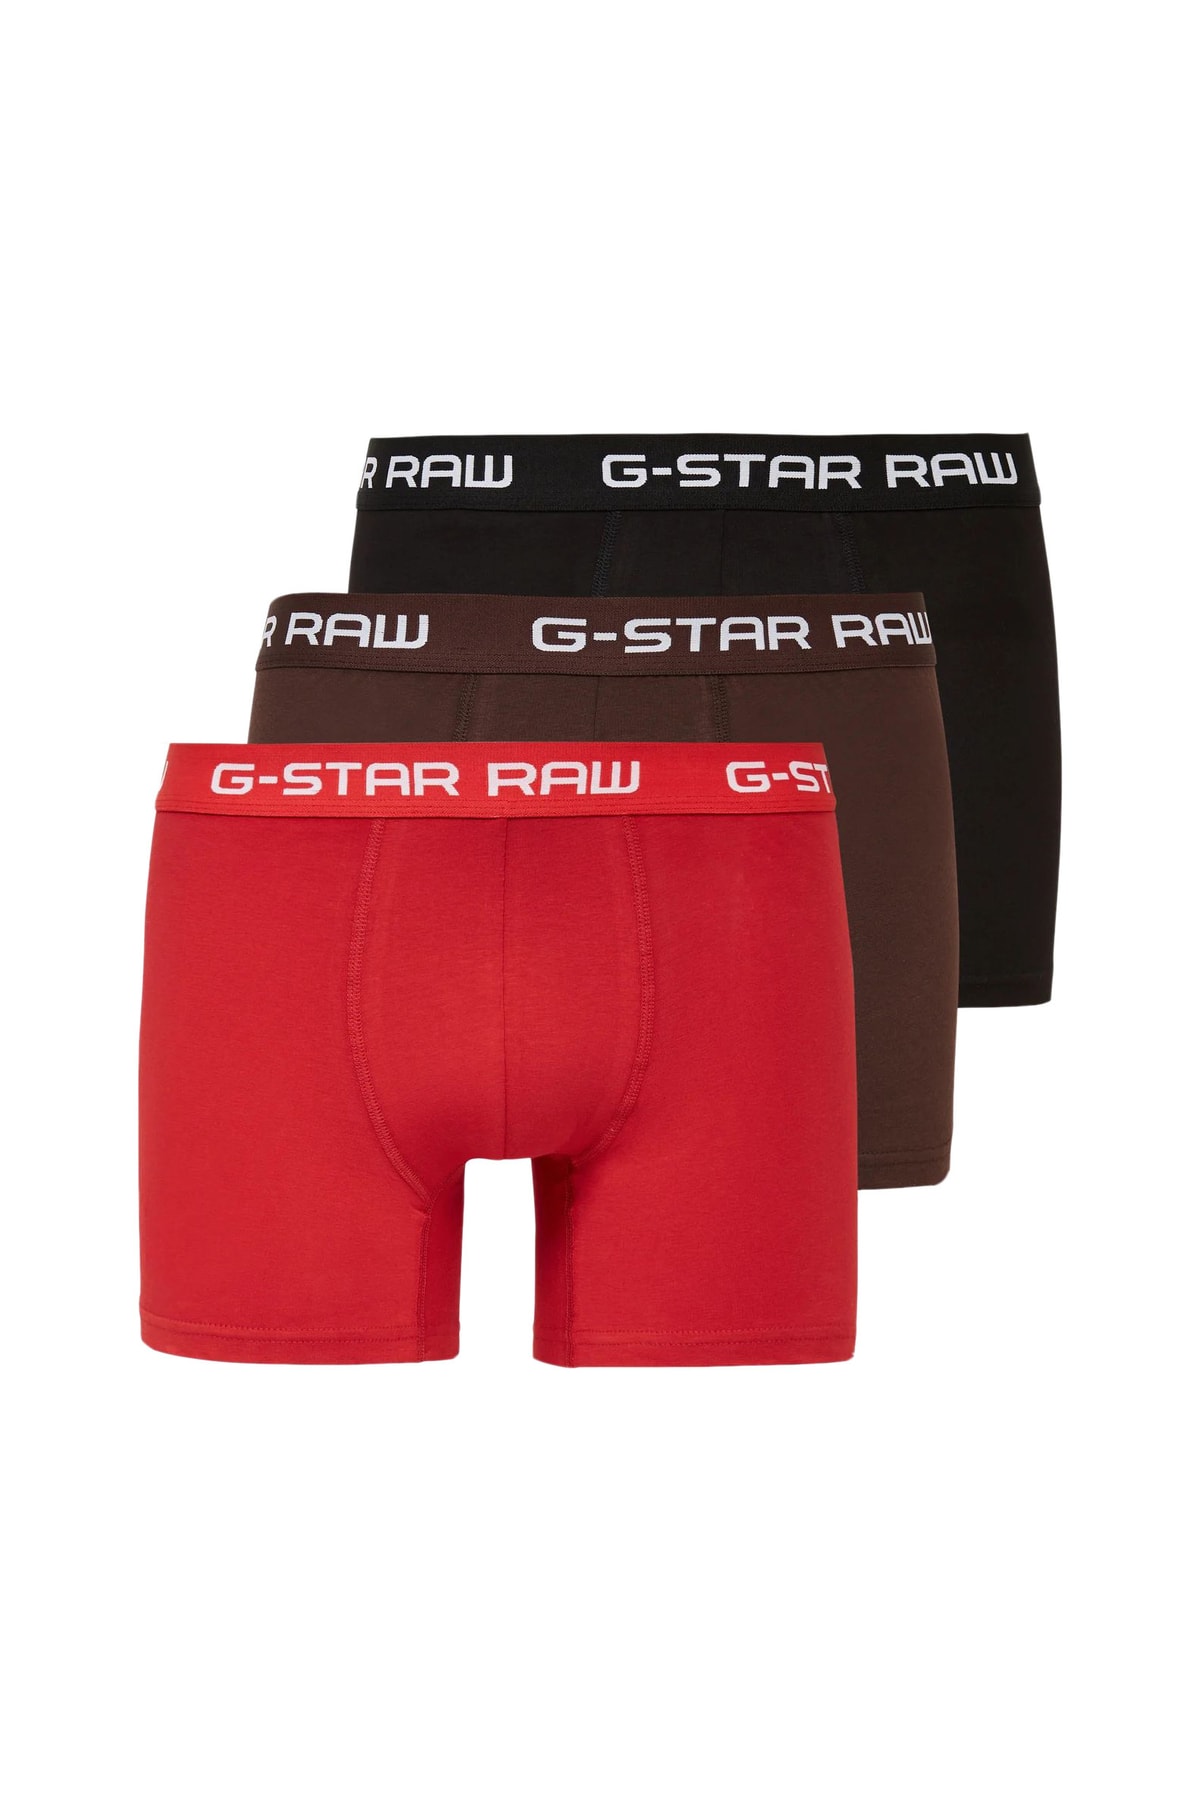 G-Star Boxershorts Rot Lizenzartikel